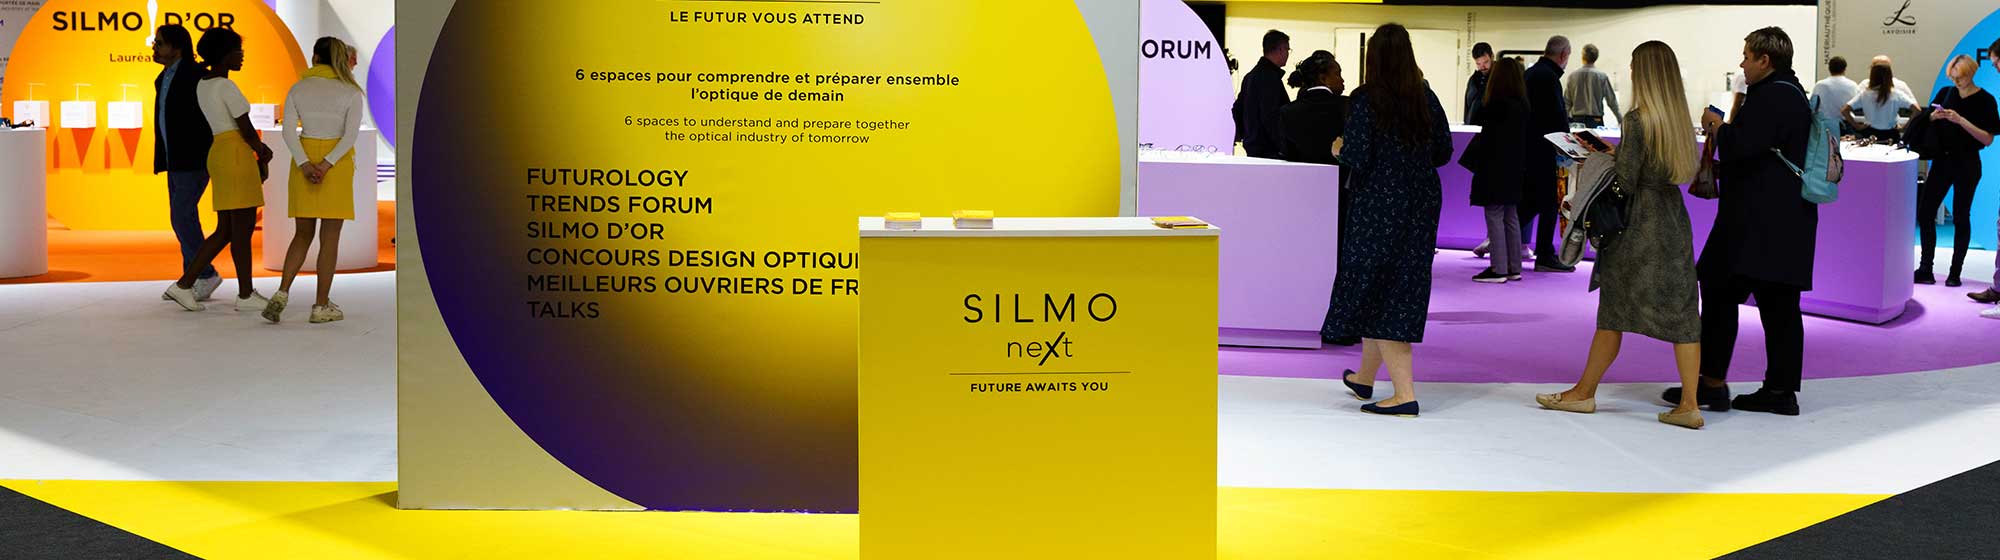 Panneau présentant SILMO Next